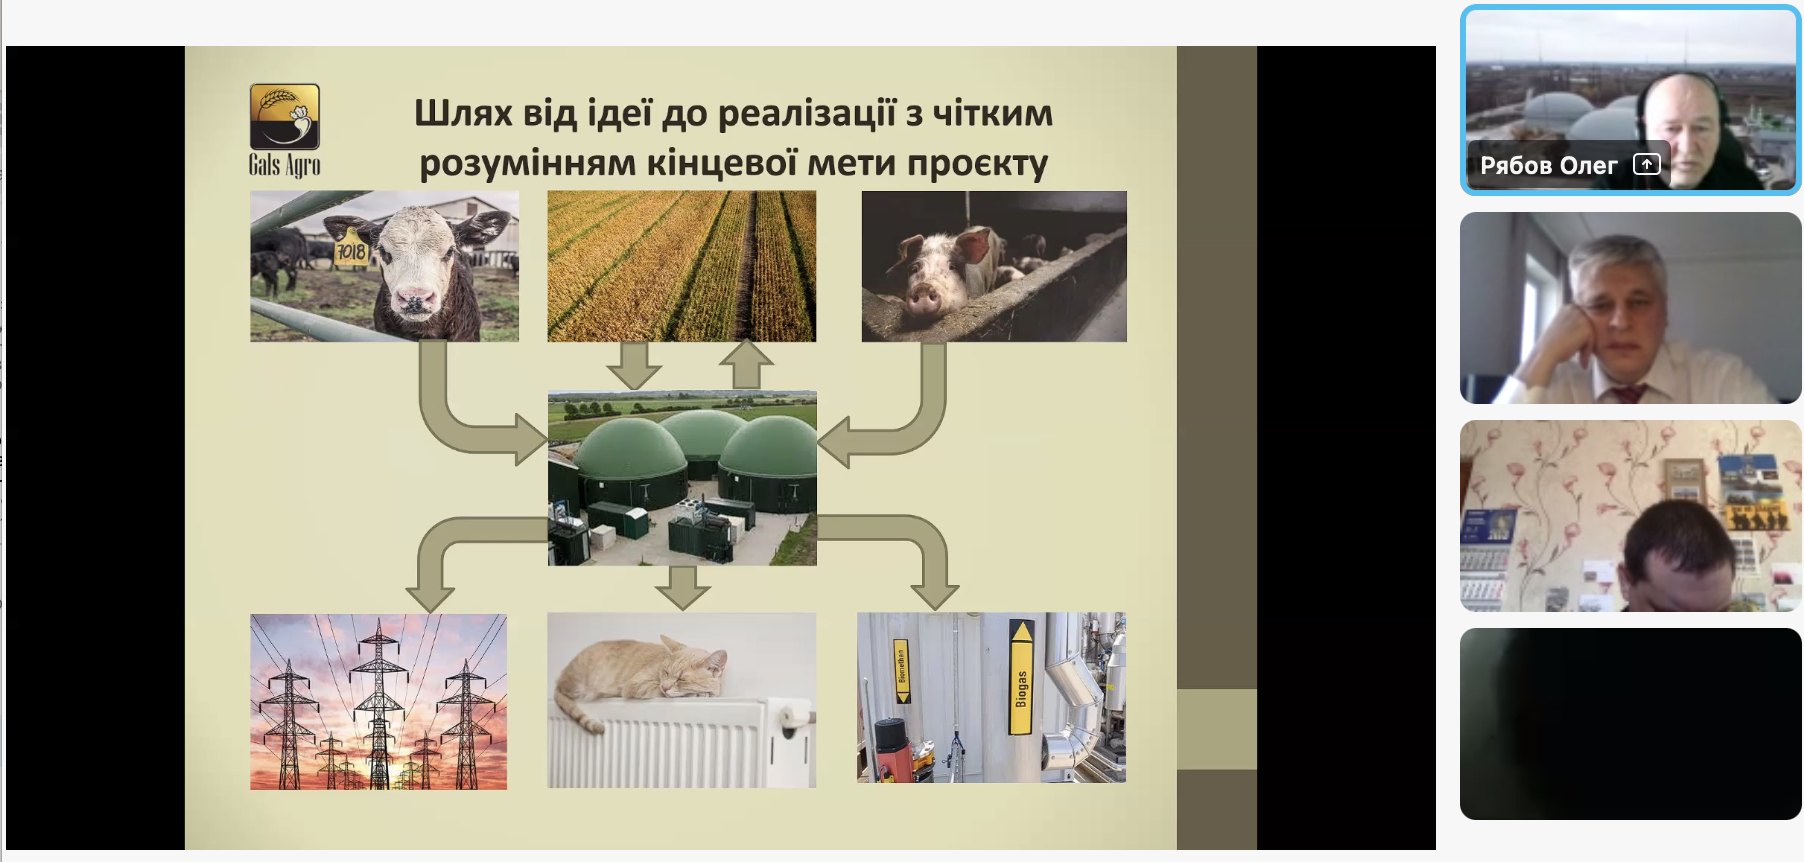 Розвиток виробництва біогазу/біометану на території Кіровоградської області